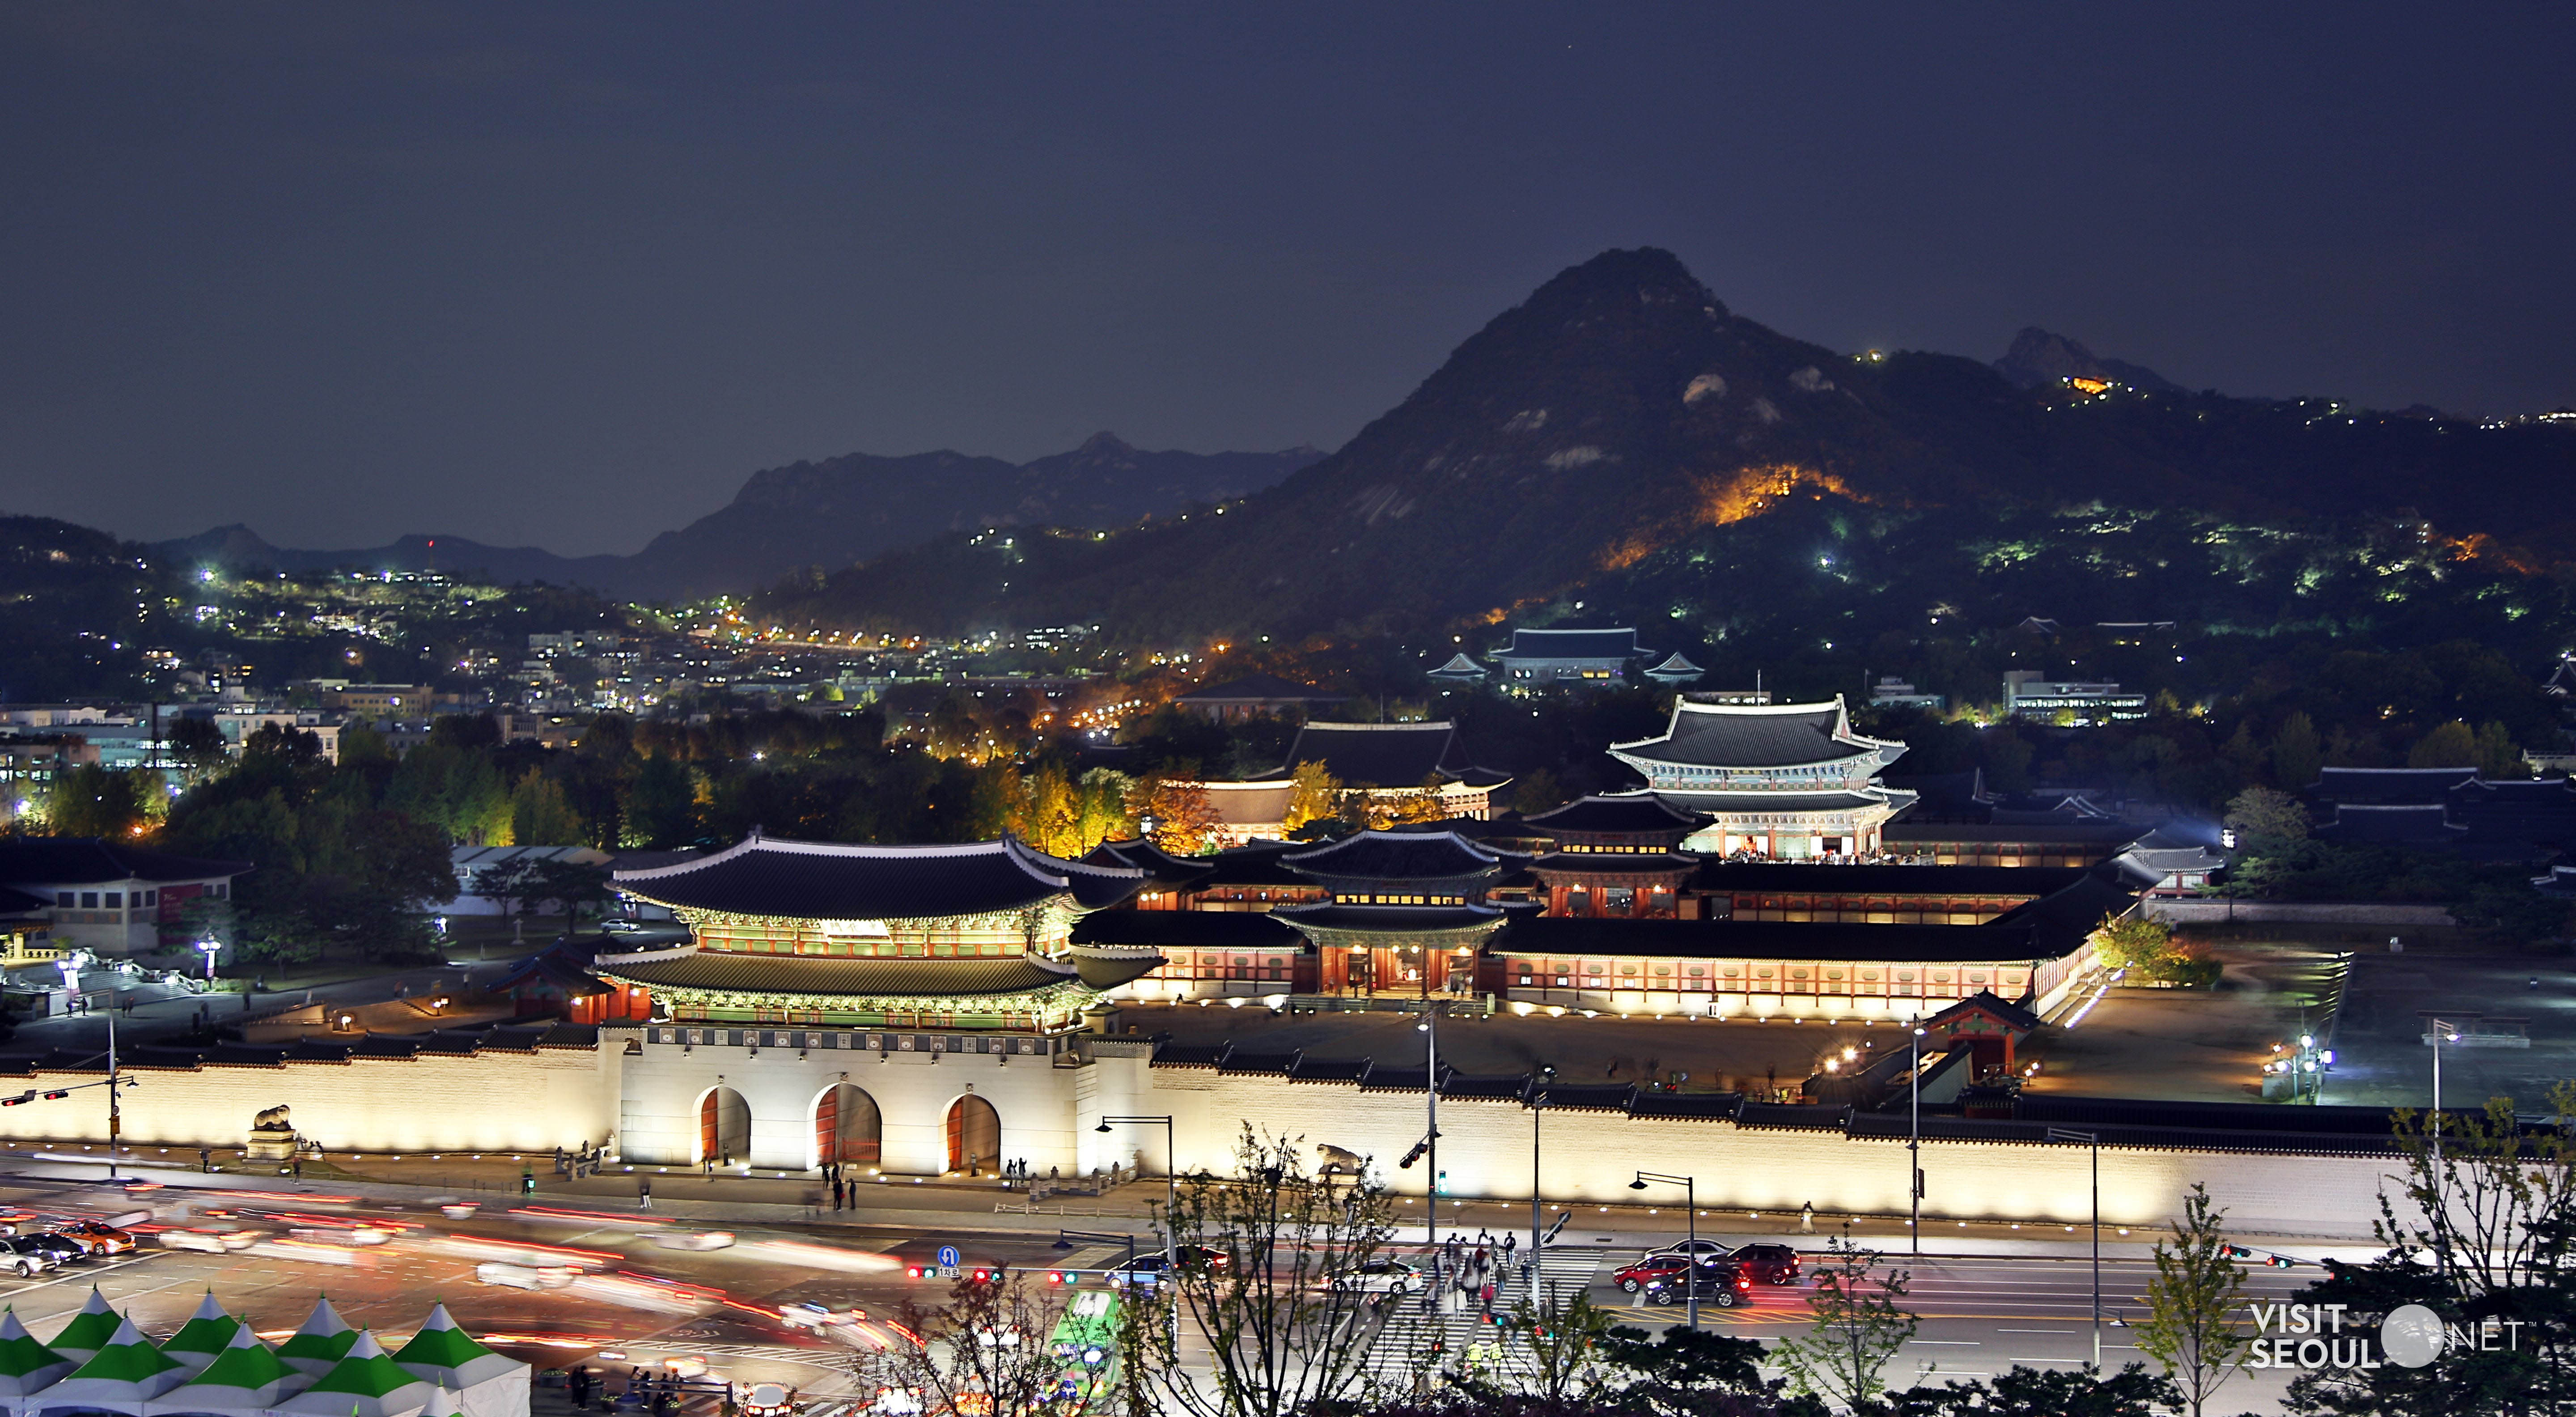 Gyeongbokgung Palace4 : Panoramic view of Gyeongbokgung Palace at night seen far away from Sejong-ro
